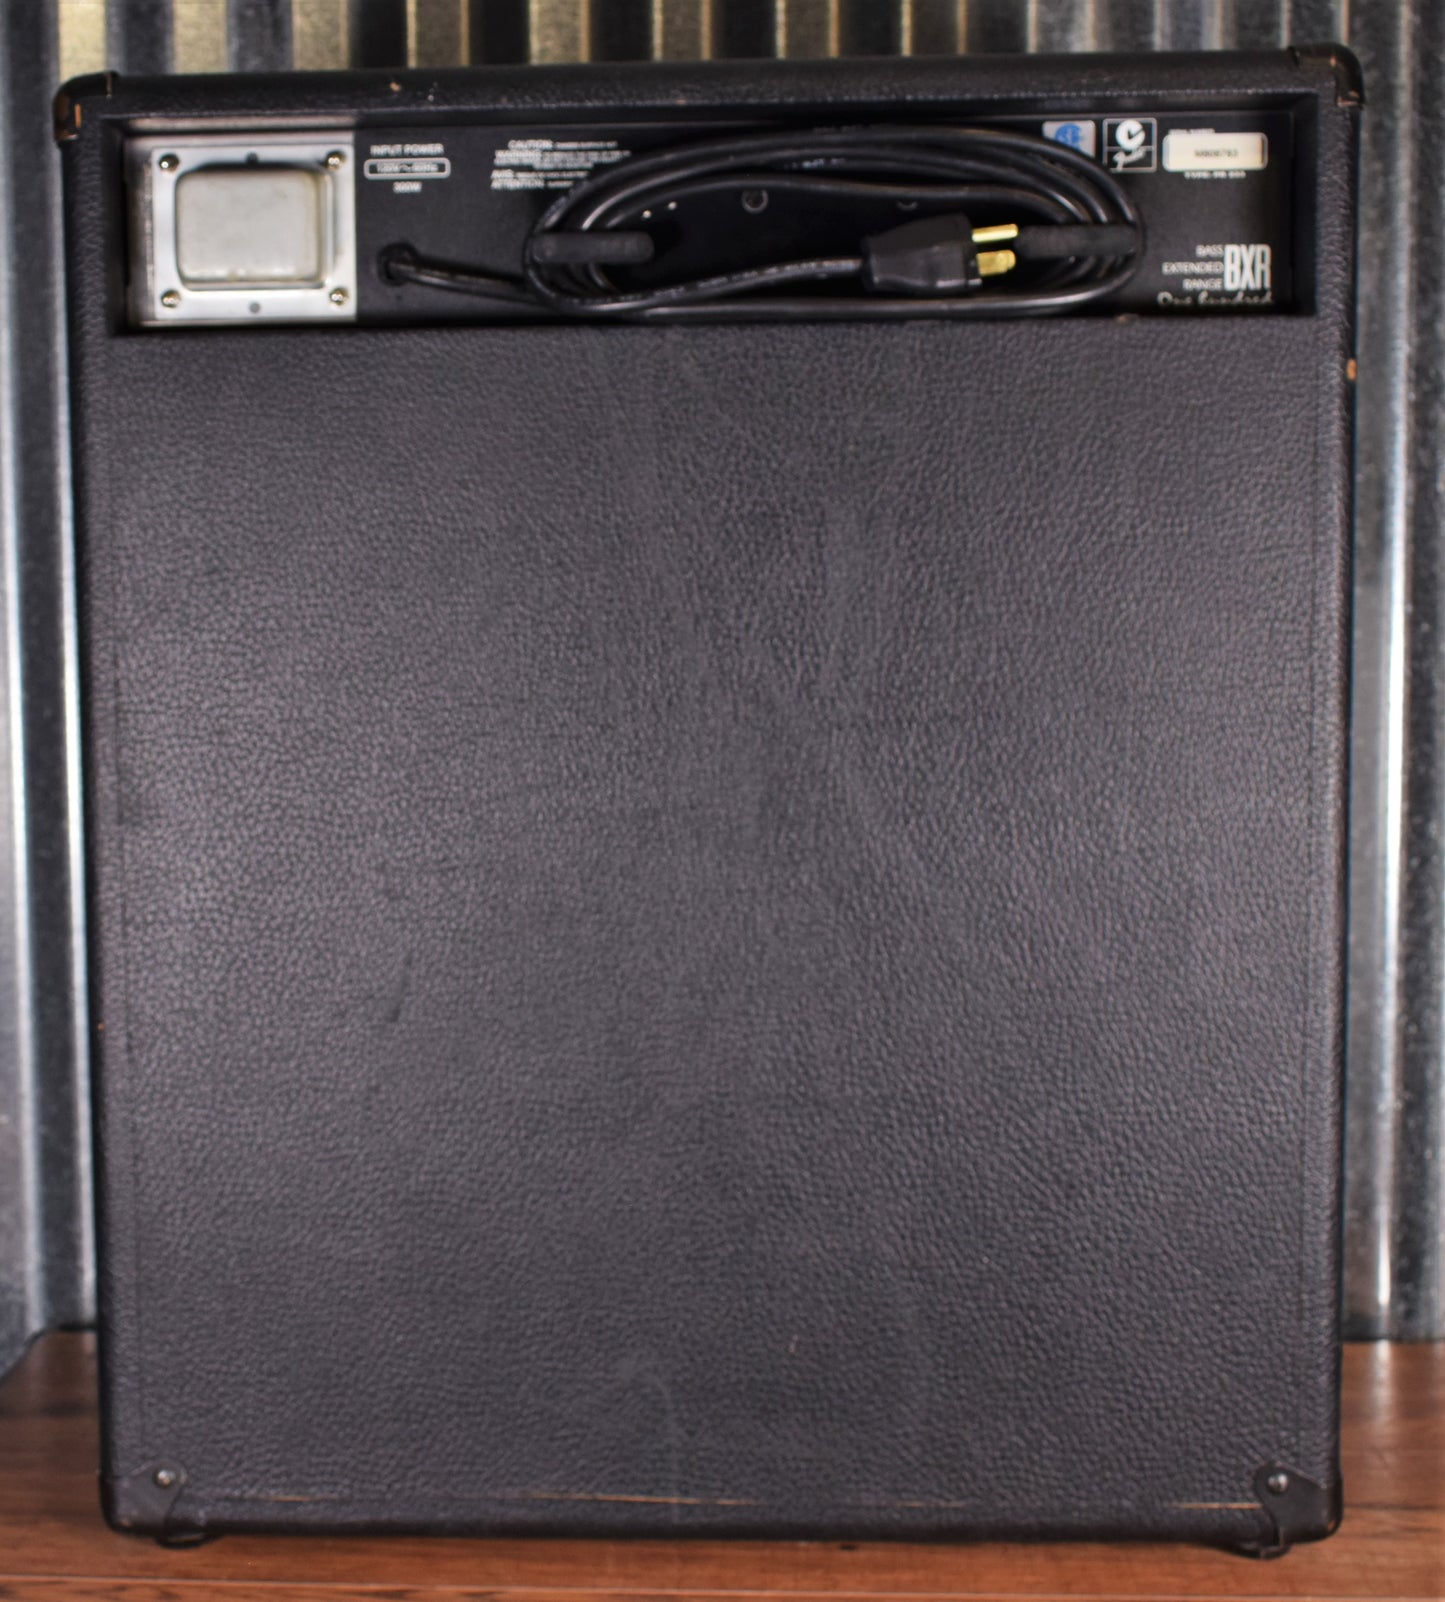 Fender BXR 100 15" Extended Range Bass Combo Amplifier Used